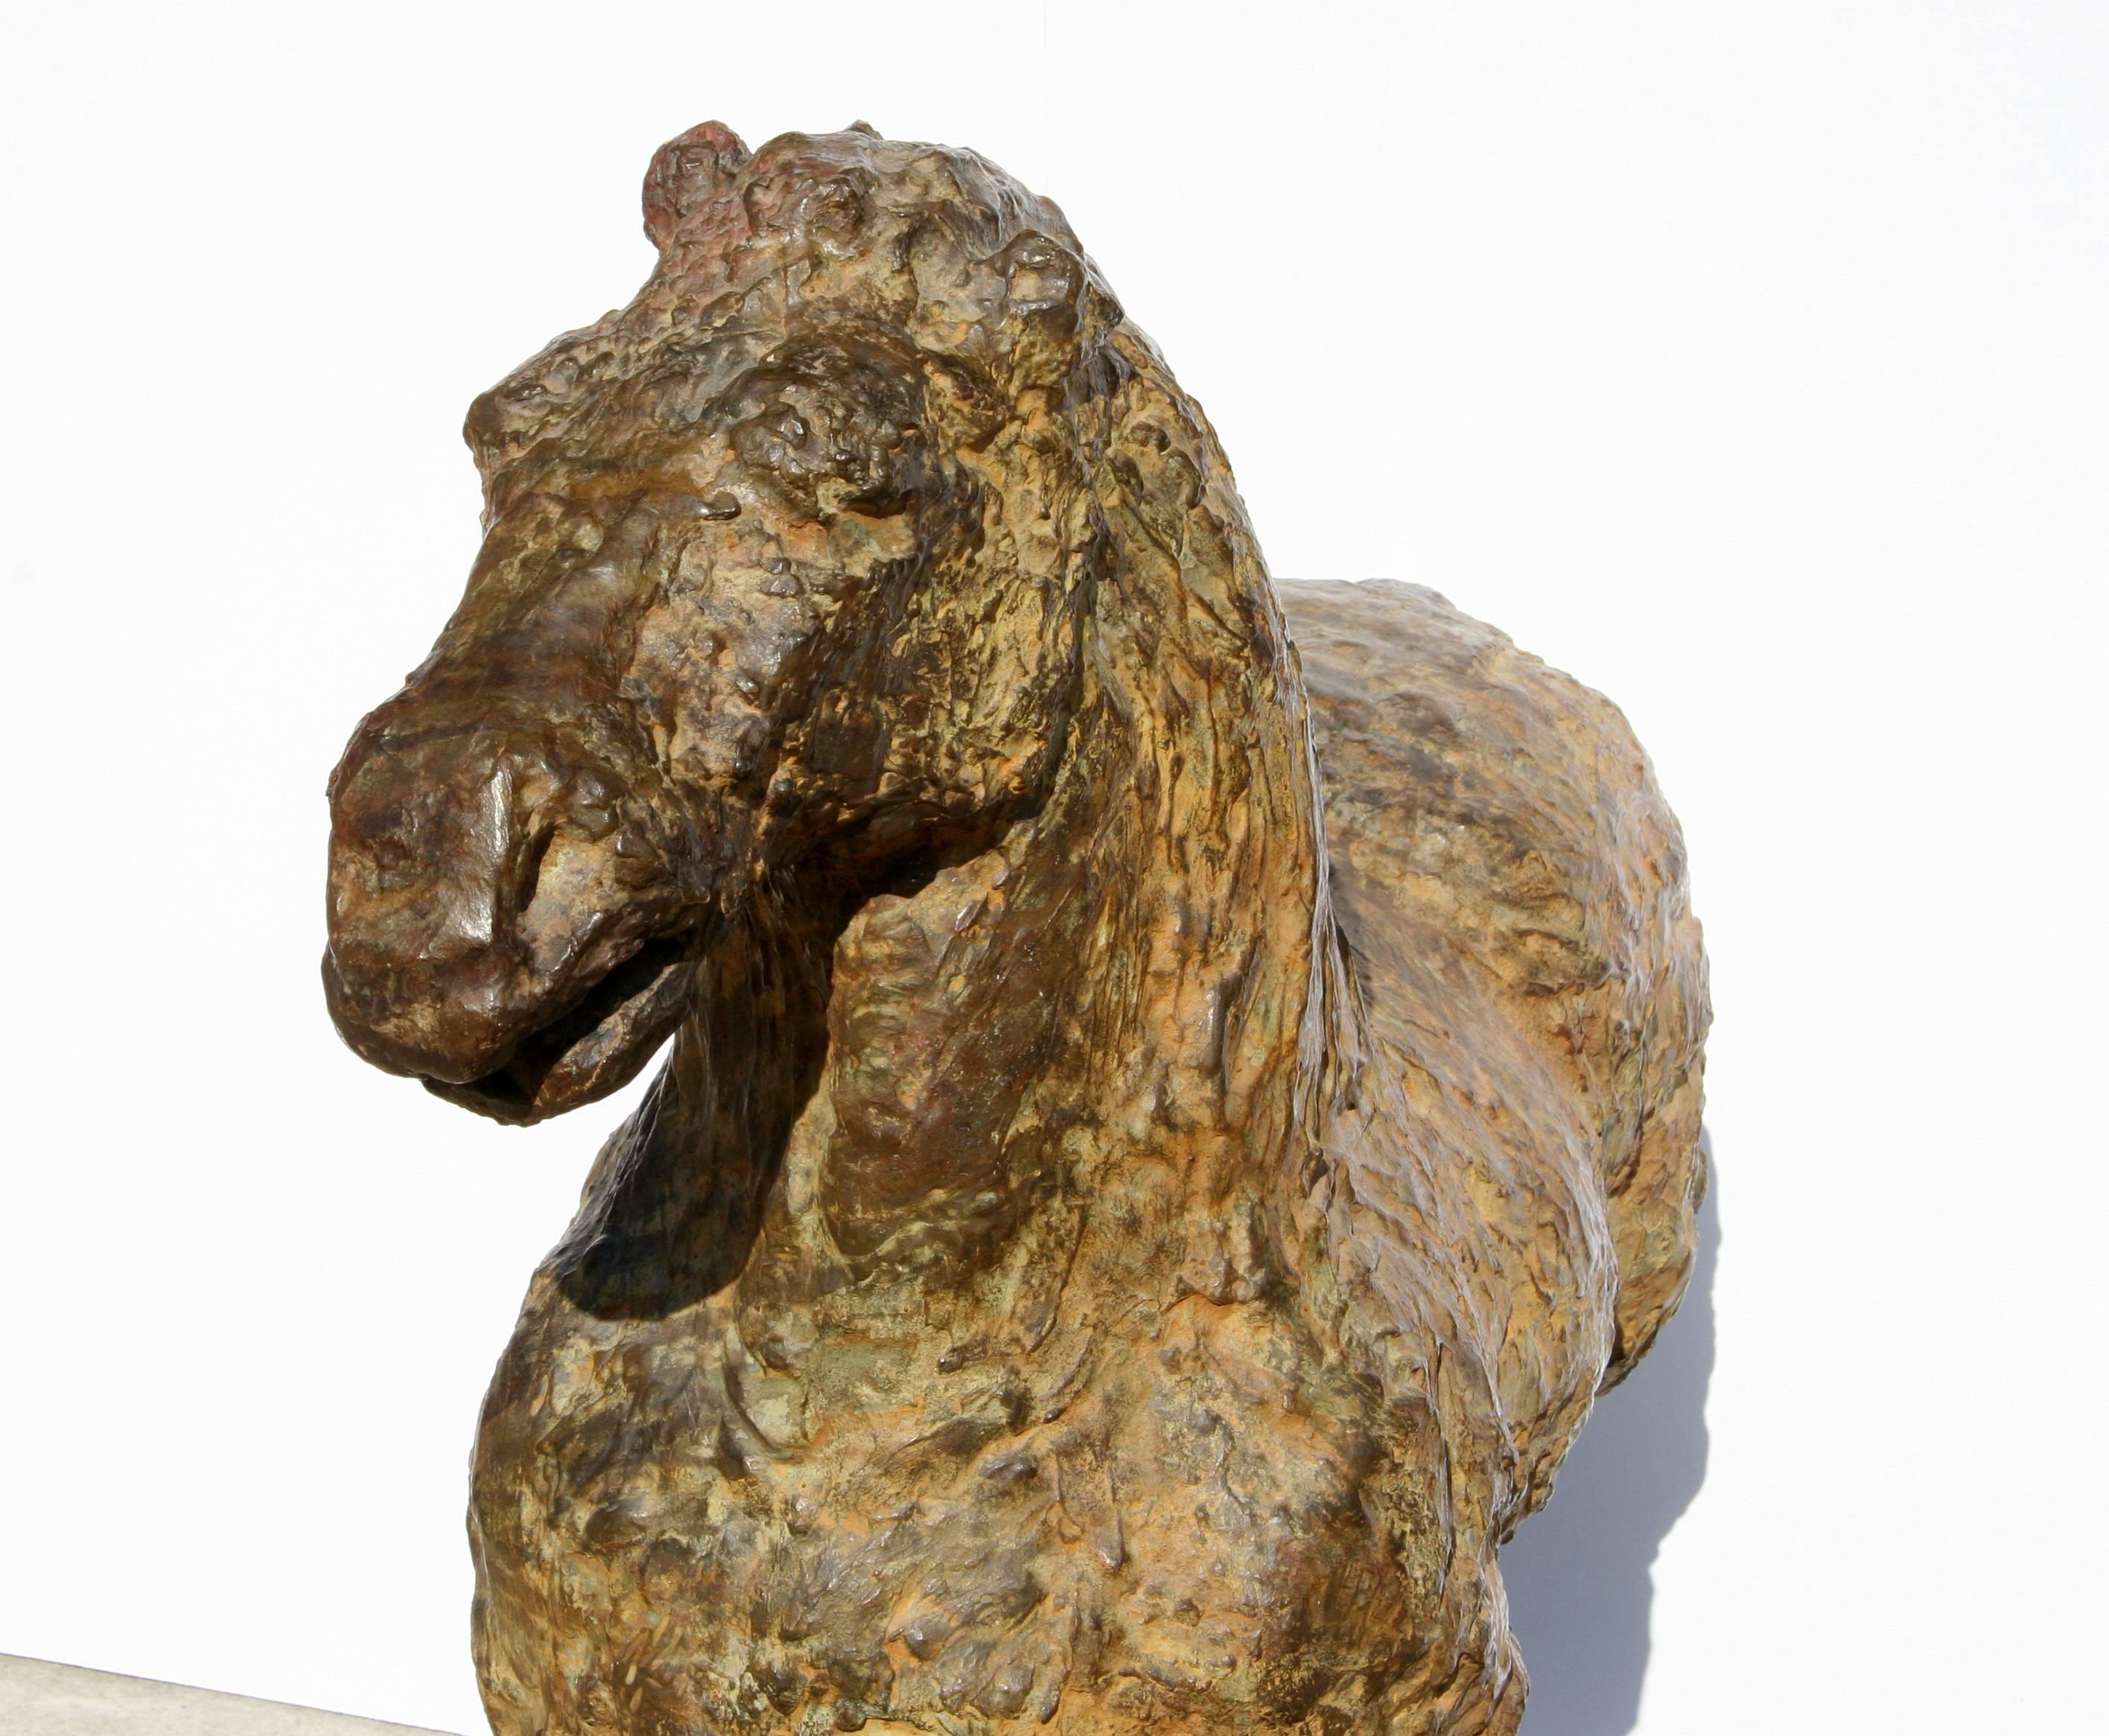 Künstlerin: Lina Binkele, Kolumbianerin
Titel: Fragment Nr. 4
Jahr: 1995
Medium: Bronze-Skulptur 
Auflage: 2/5
Größe: 25 in. x 40 in. x 17 in. (63,5 cm x 101,6 cm x 43,18 cm)